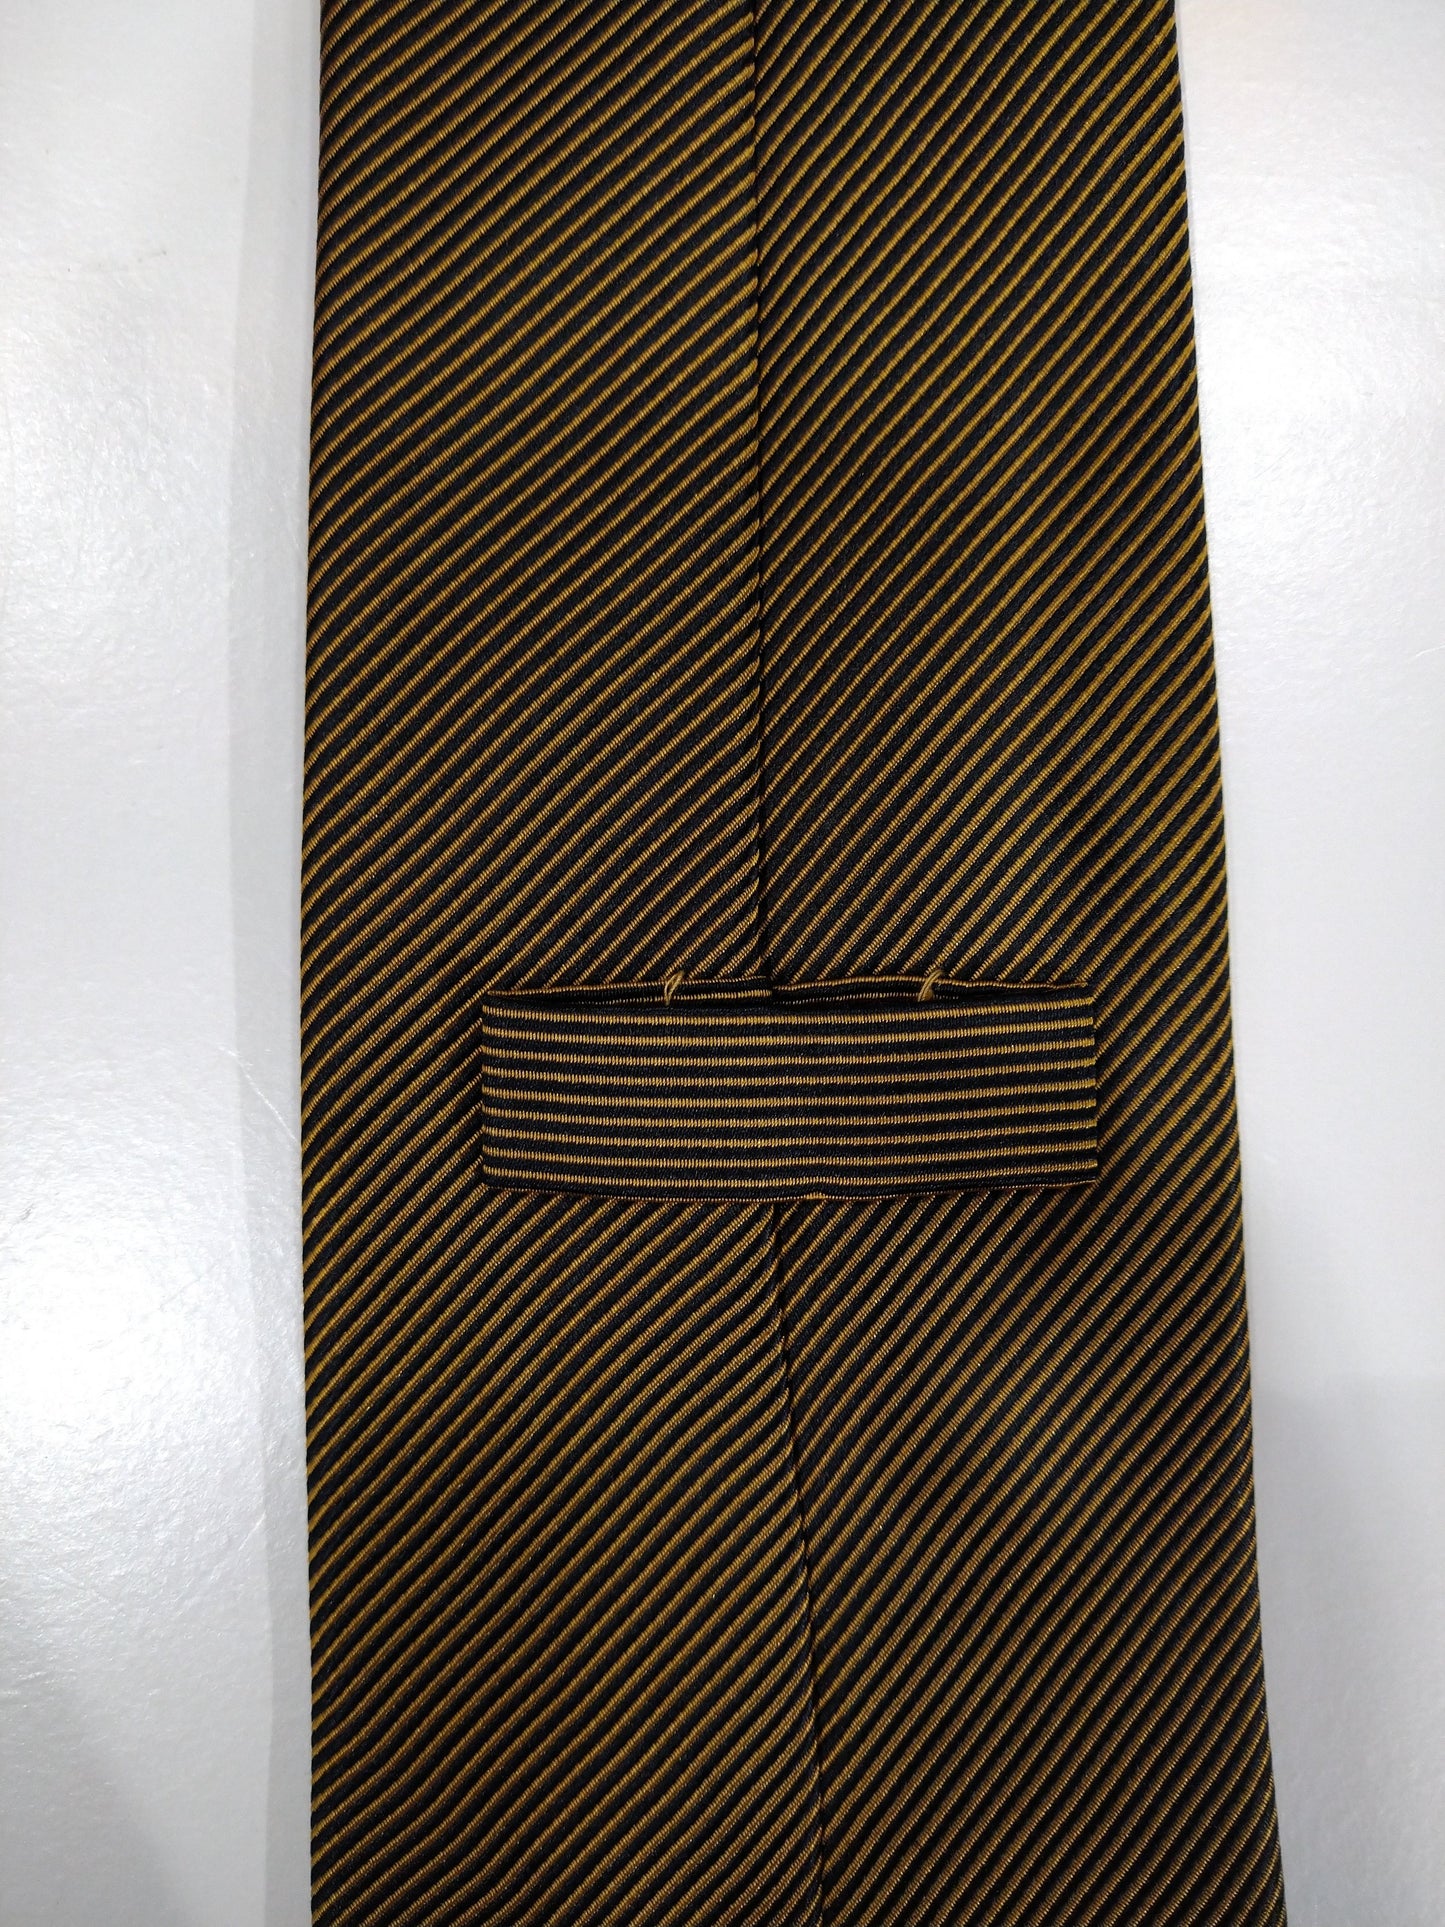 Corbata de seda. Motif negro de oro amarillo.